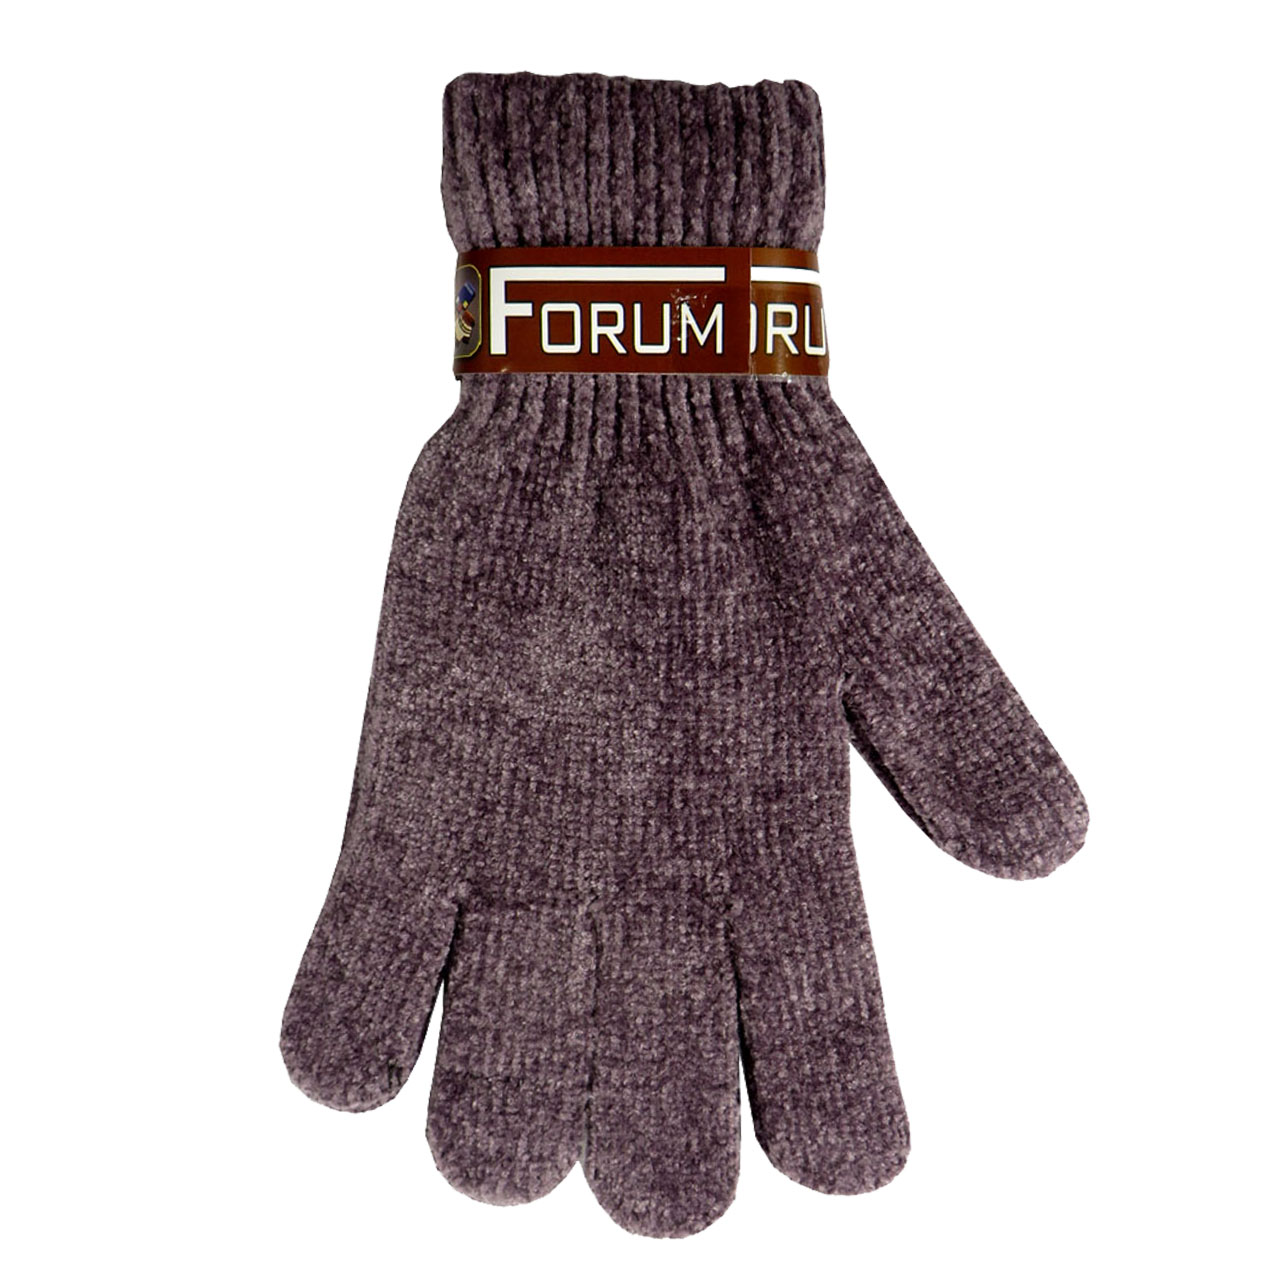 دستکش فرام مدل forum01